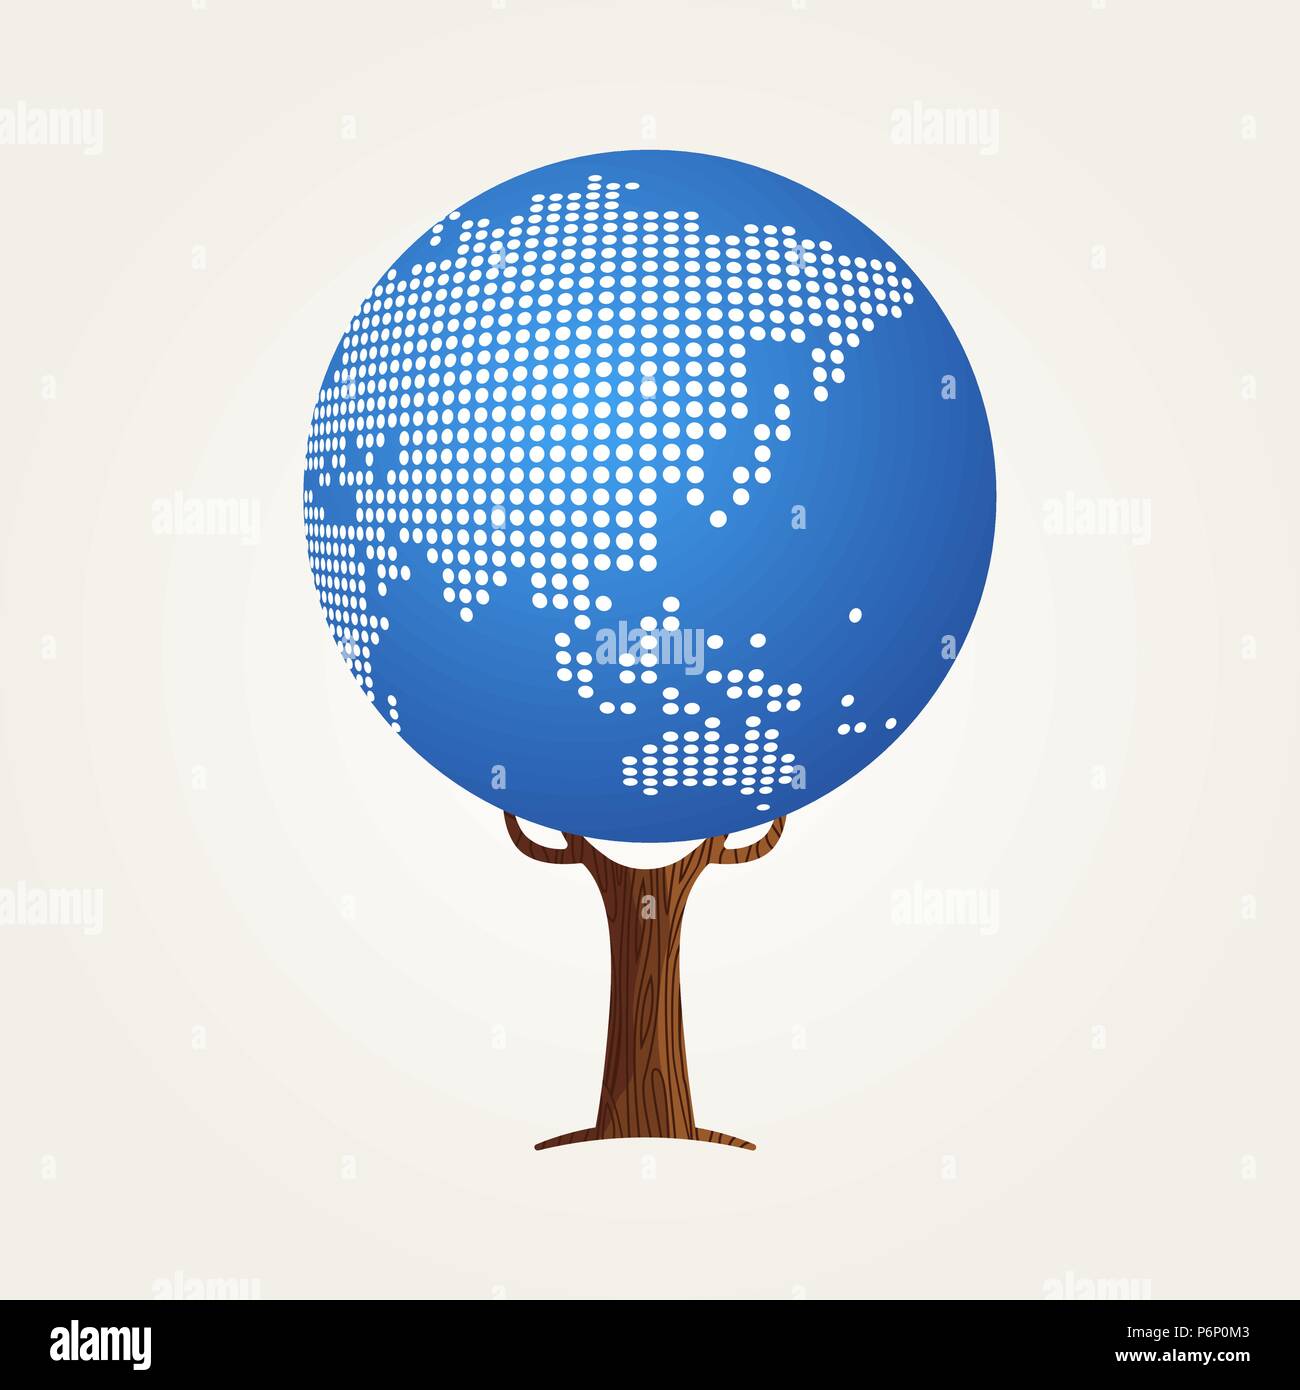 Baum aus Asien Weltkarte. Konzept Abbildung über globale Kommunikation, Internet Projekt oder weltweit. EPS 10 Vektor. Stock Vektor